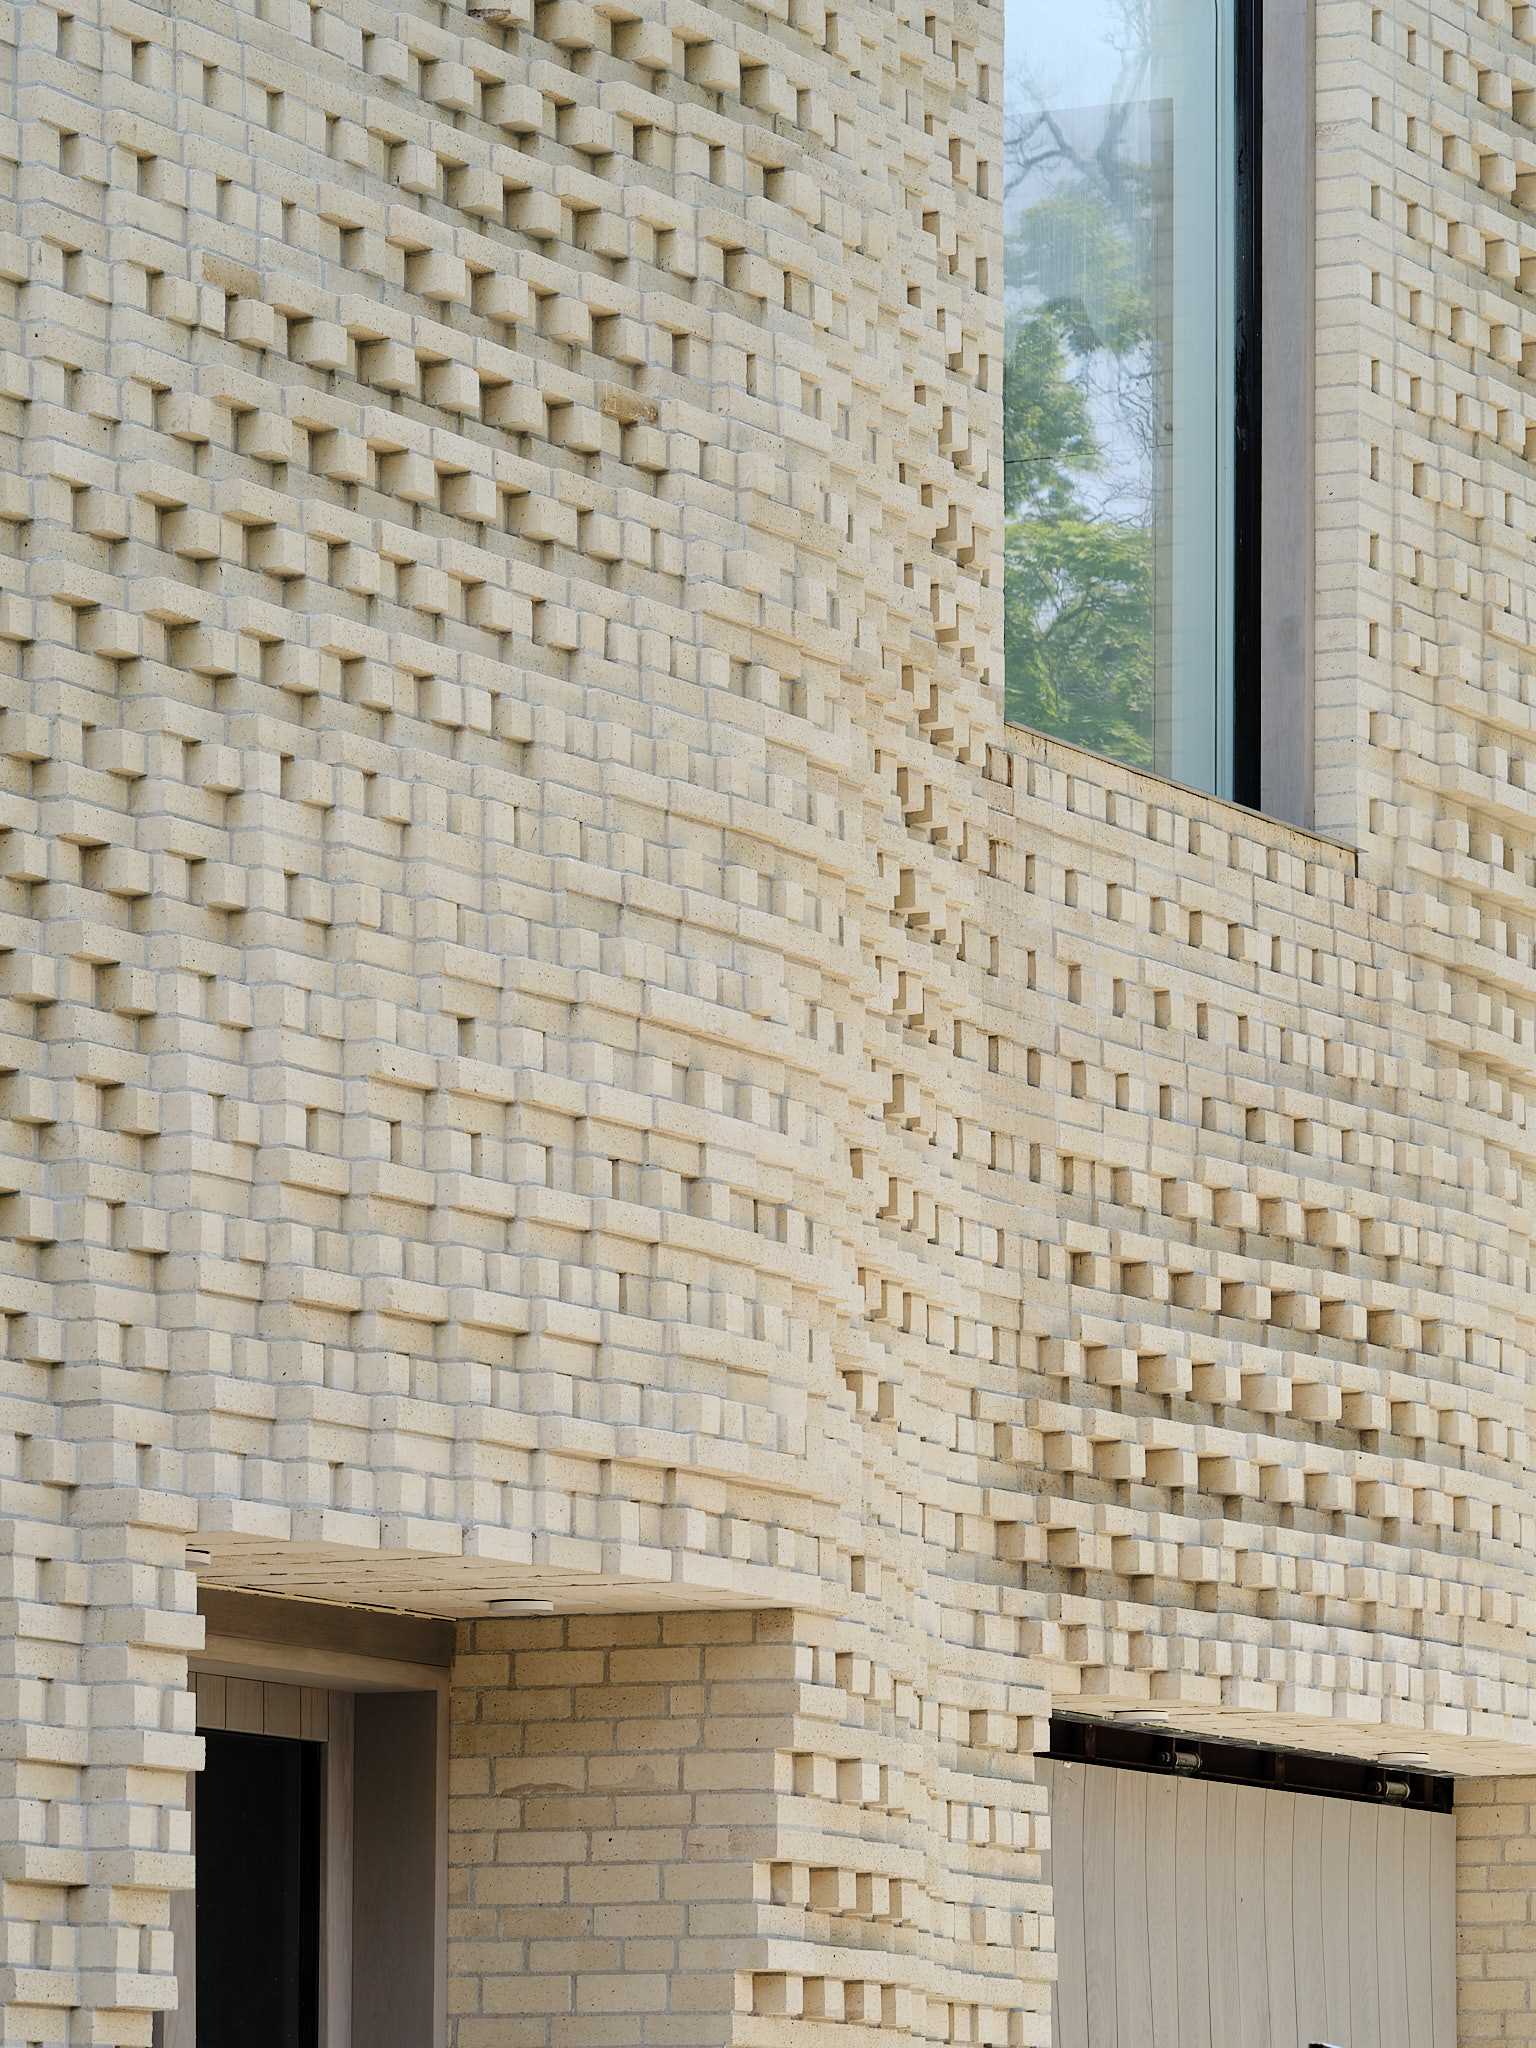 A sculptural brick facade for a single-family home in Toronto, Canada.